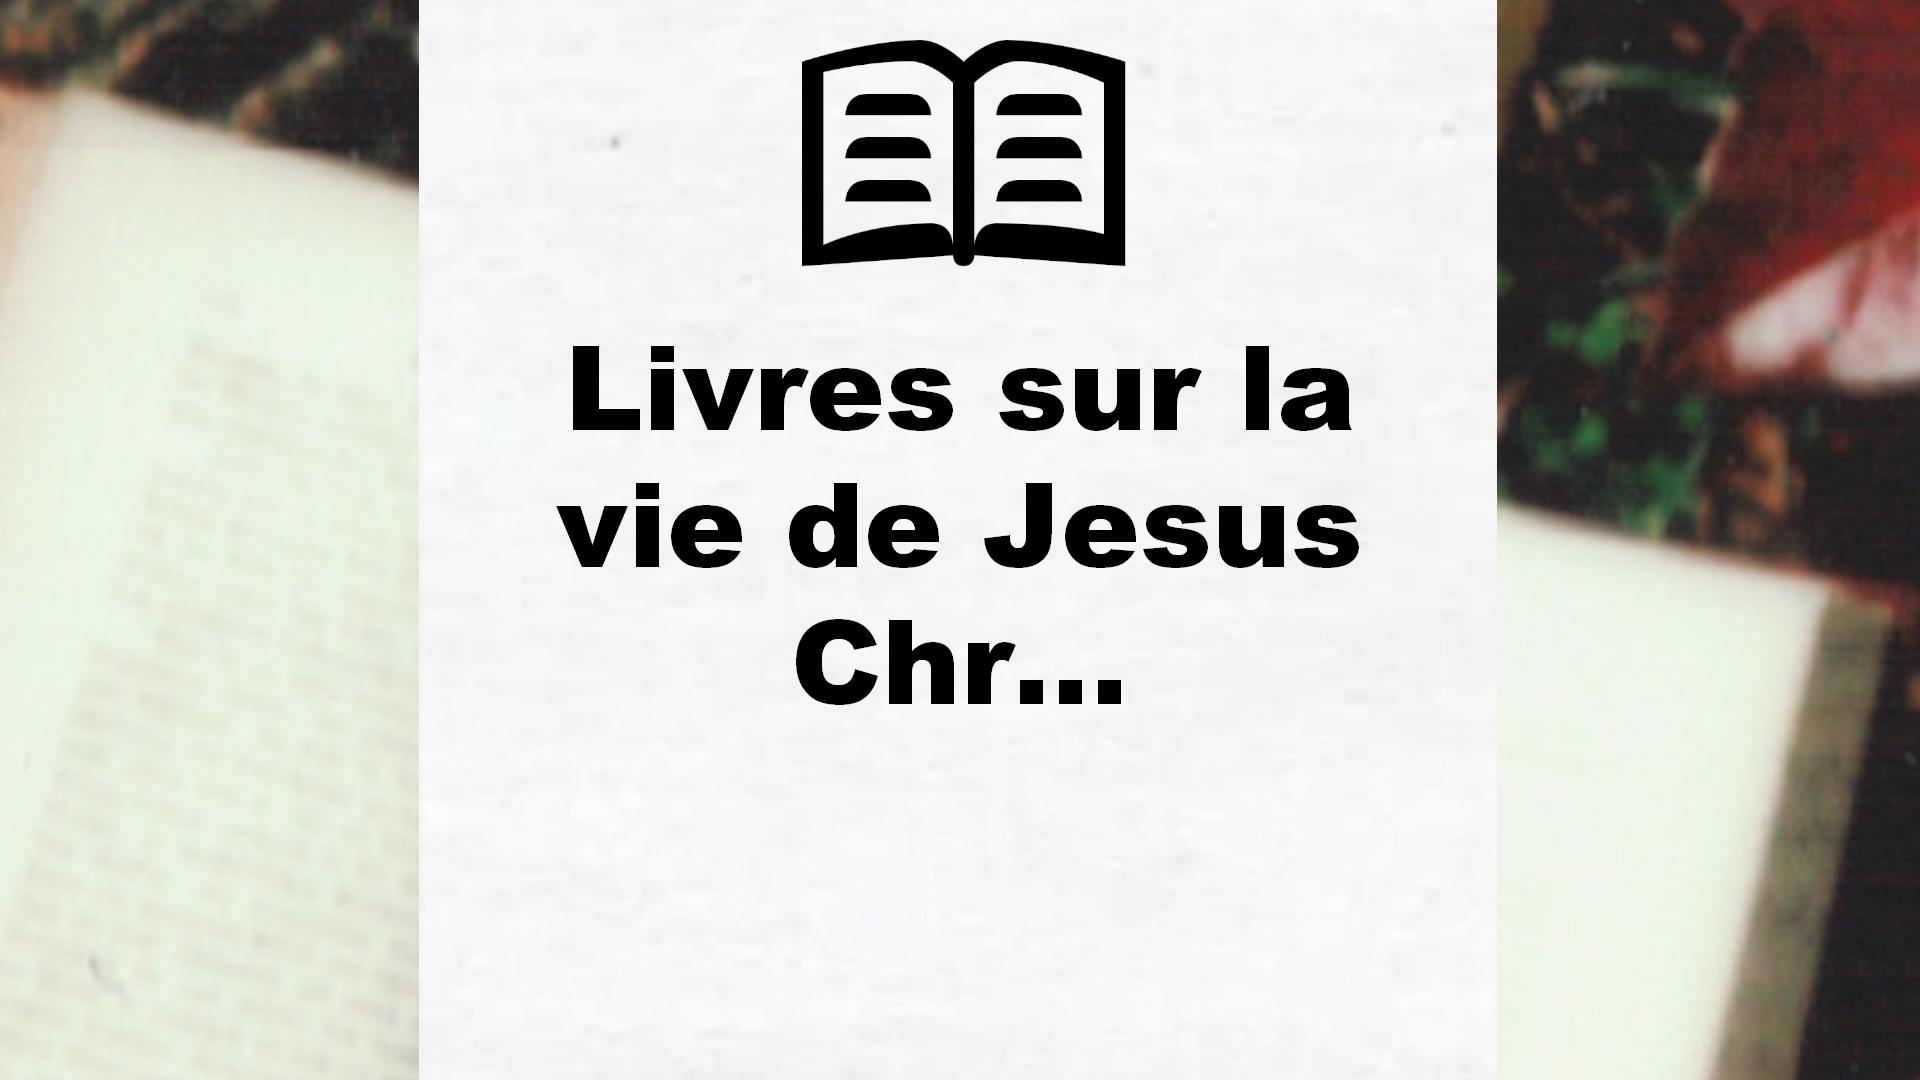 Livres sur la vie de Jesus Christ